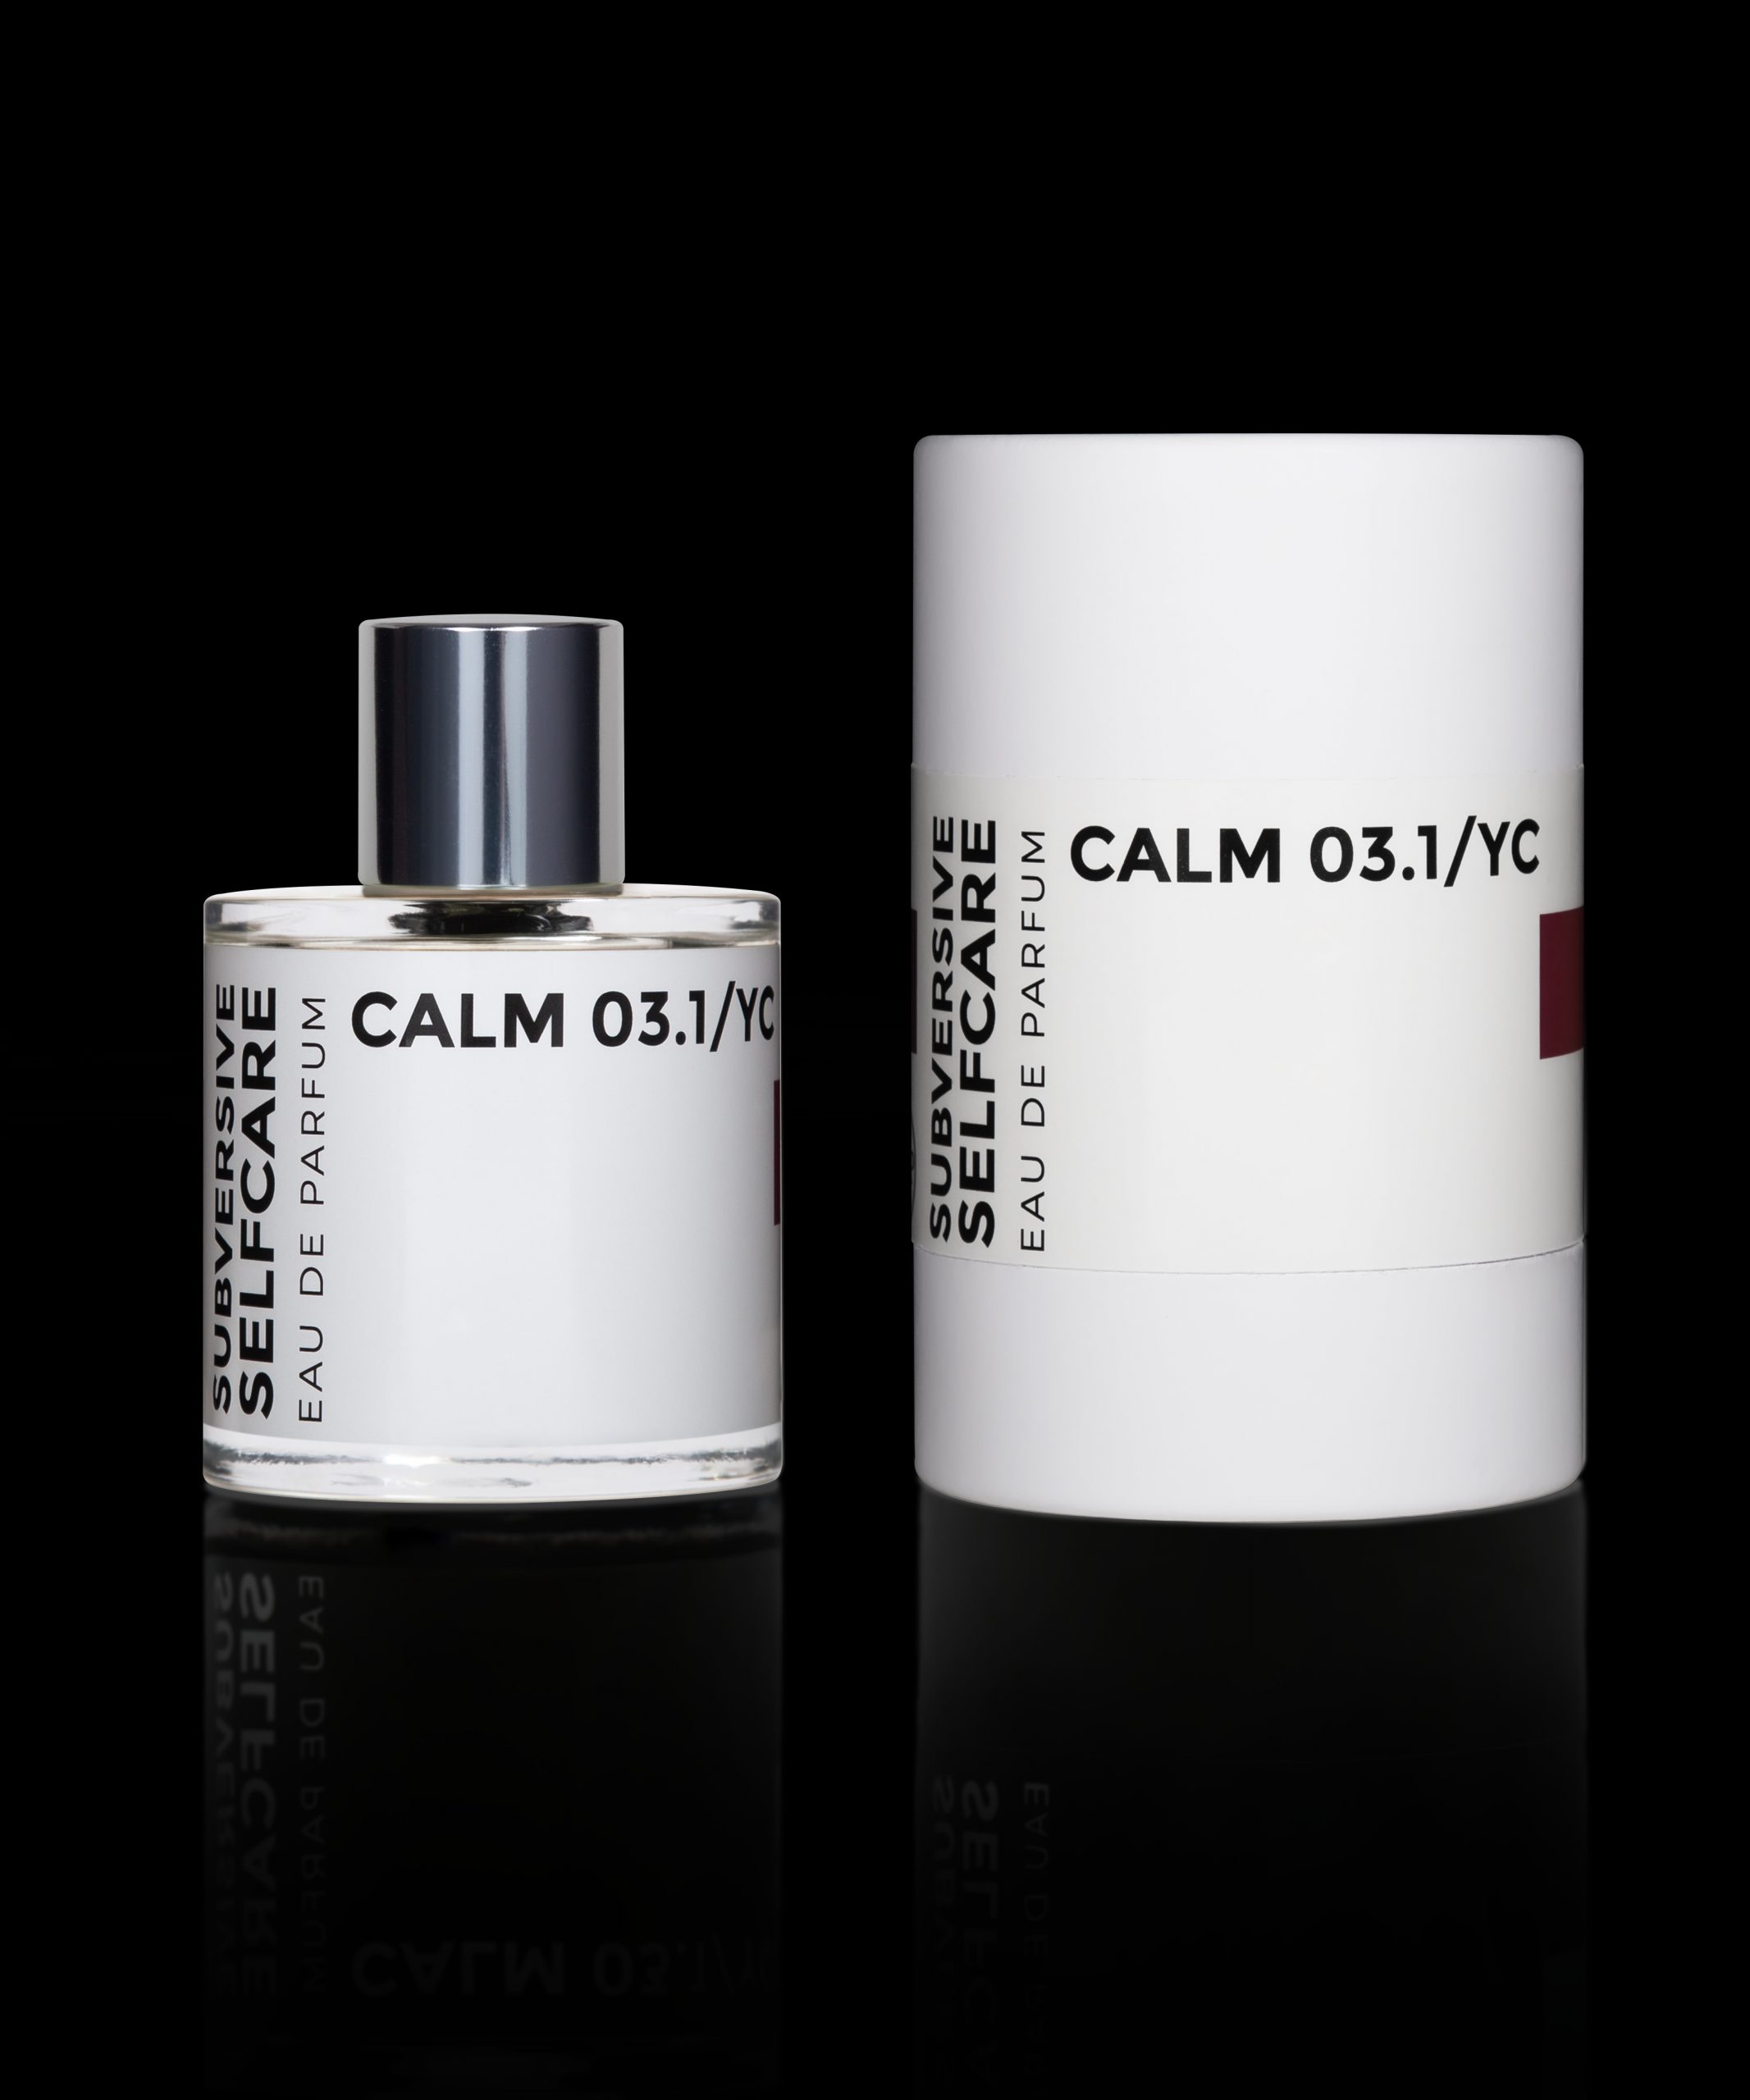 Atelier PMP Eau de Parfum Nischenduft Calm 03.1/YC, Flakon und Verpackung vor schwarzem Hintergrund. Produktabbildung.